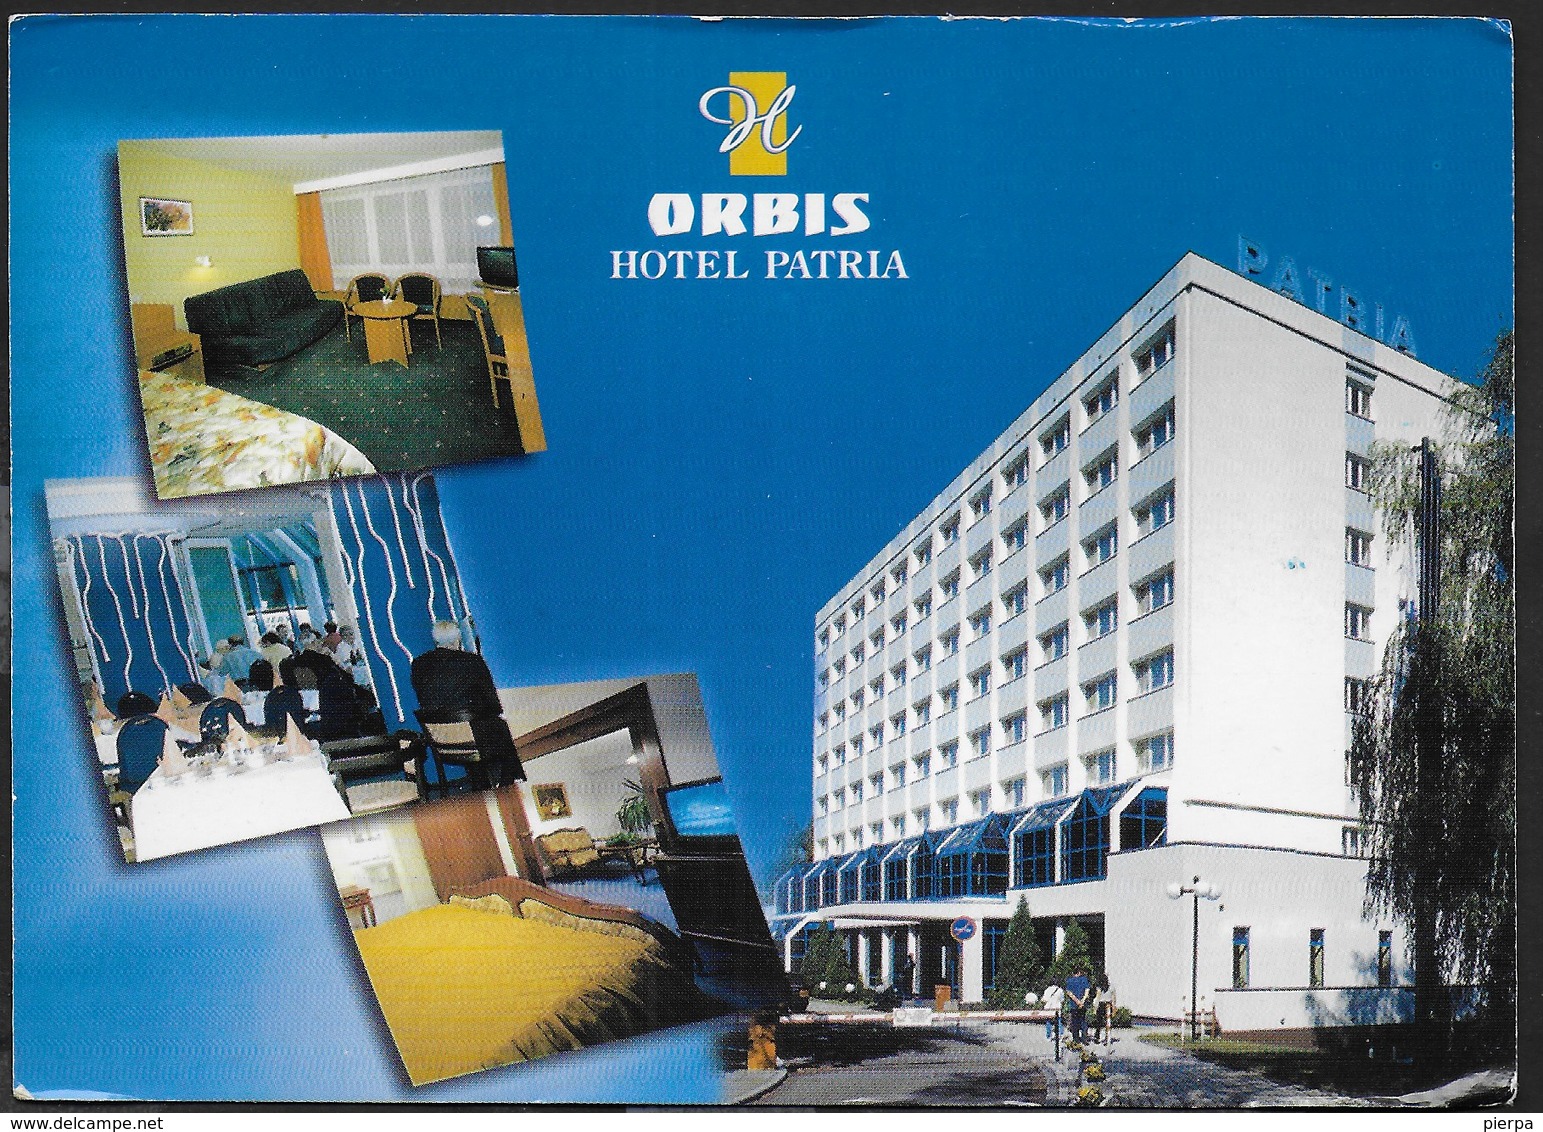 ORBIS HOTEL PATRIA - CZESTOCHOWA - POLONIA - VIAGGIATA 2001 - Alberghi & Ristoranti